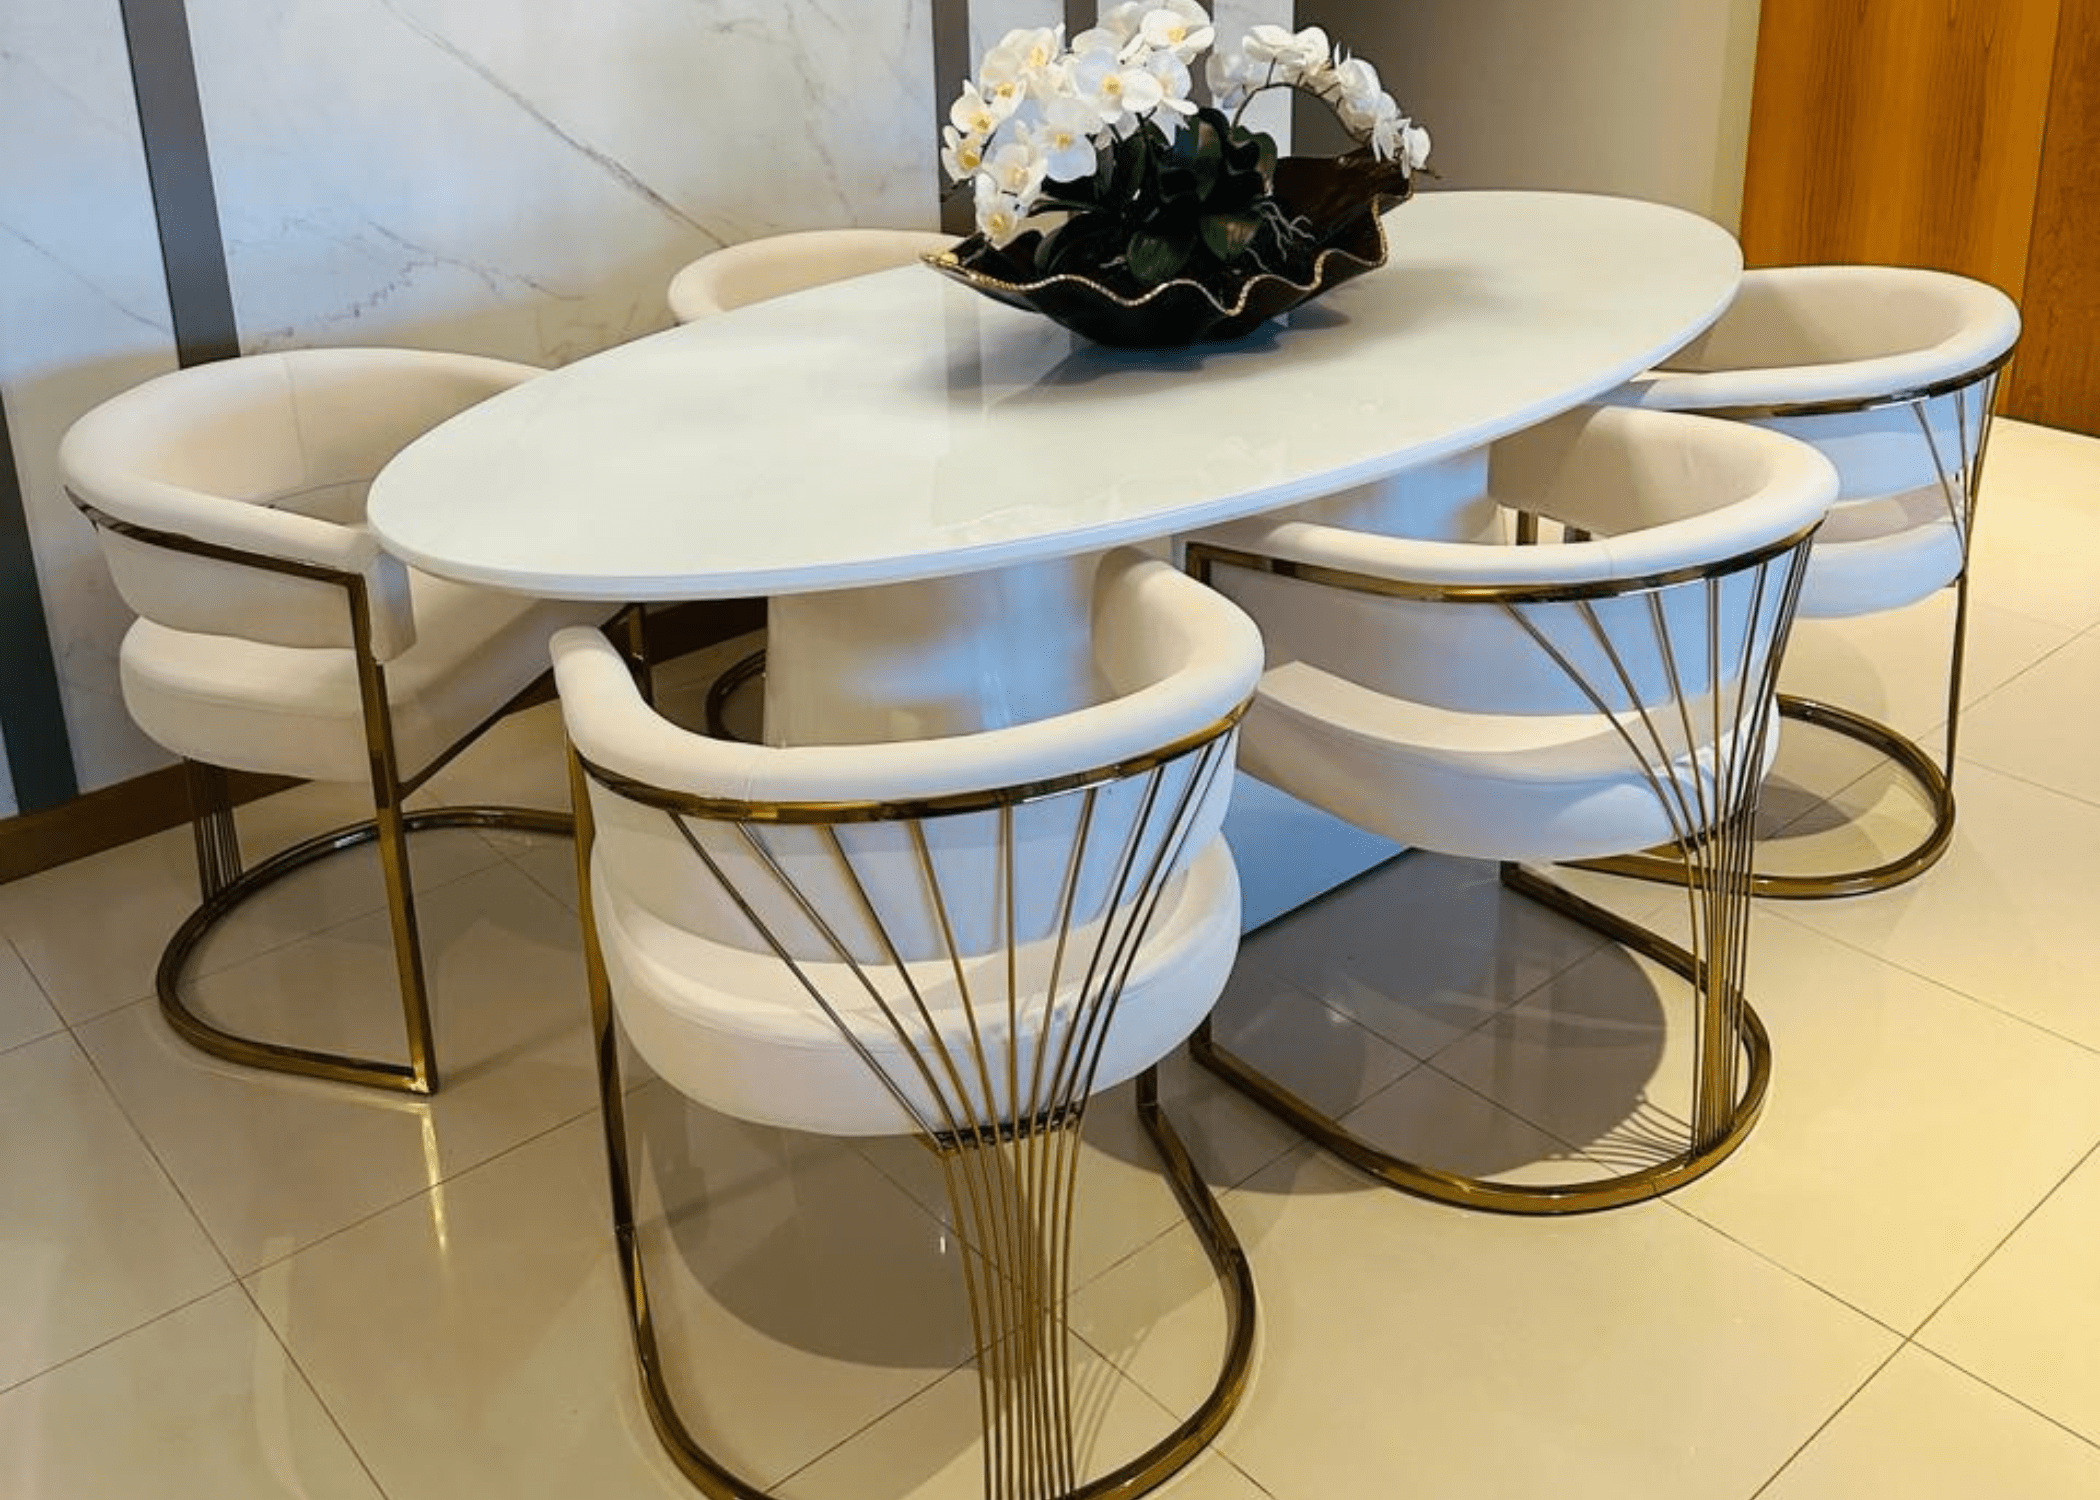 Cadeira Estaiada: Combinação de estilo contemporâneo e clássico, estrutura em aço inox, espuma densidade 33, conforto ideal para longos jantares e design sofisticado.